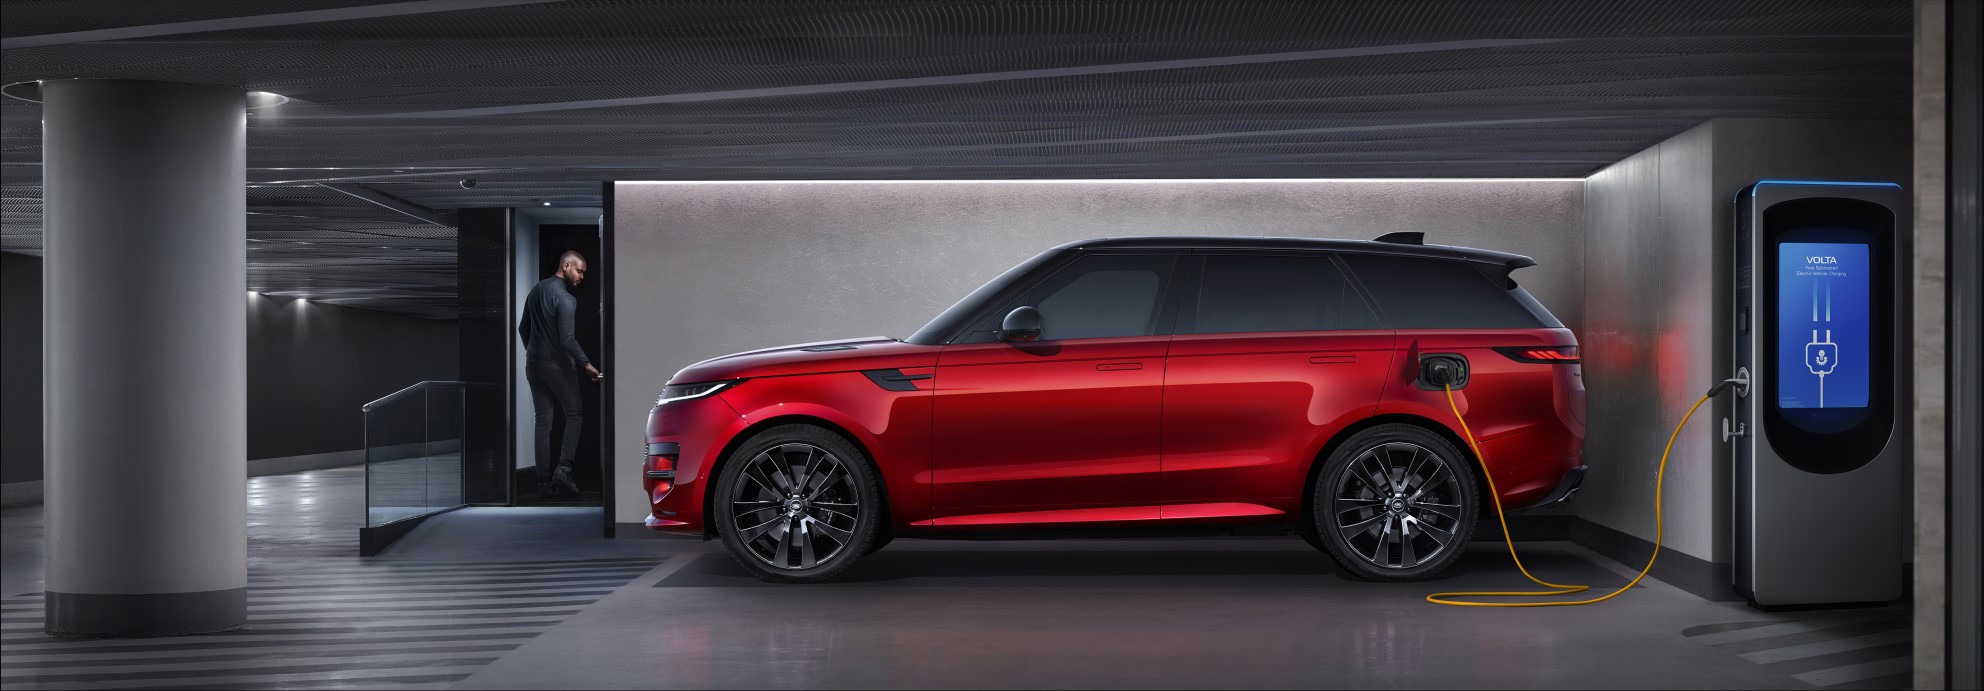 Range Rover Sport Phev deverá chegar em abril na autorizada Extrema